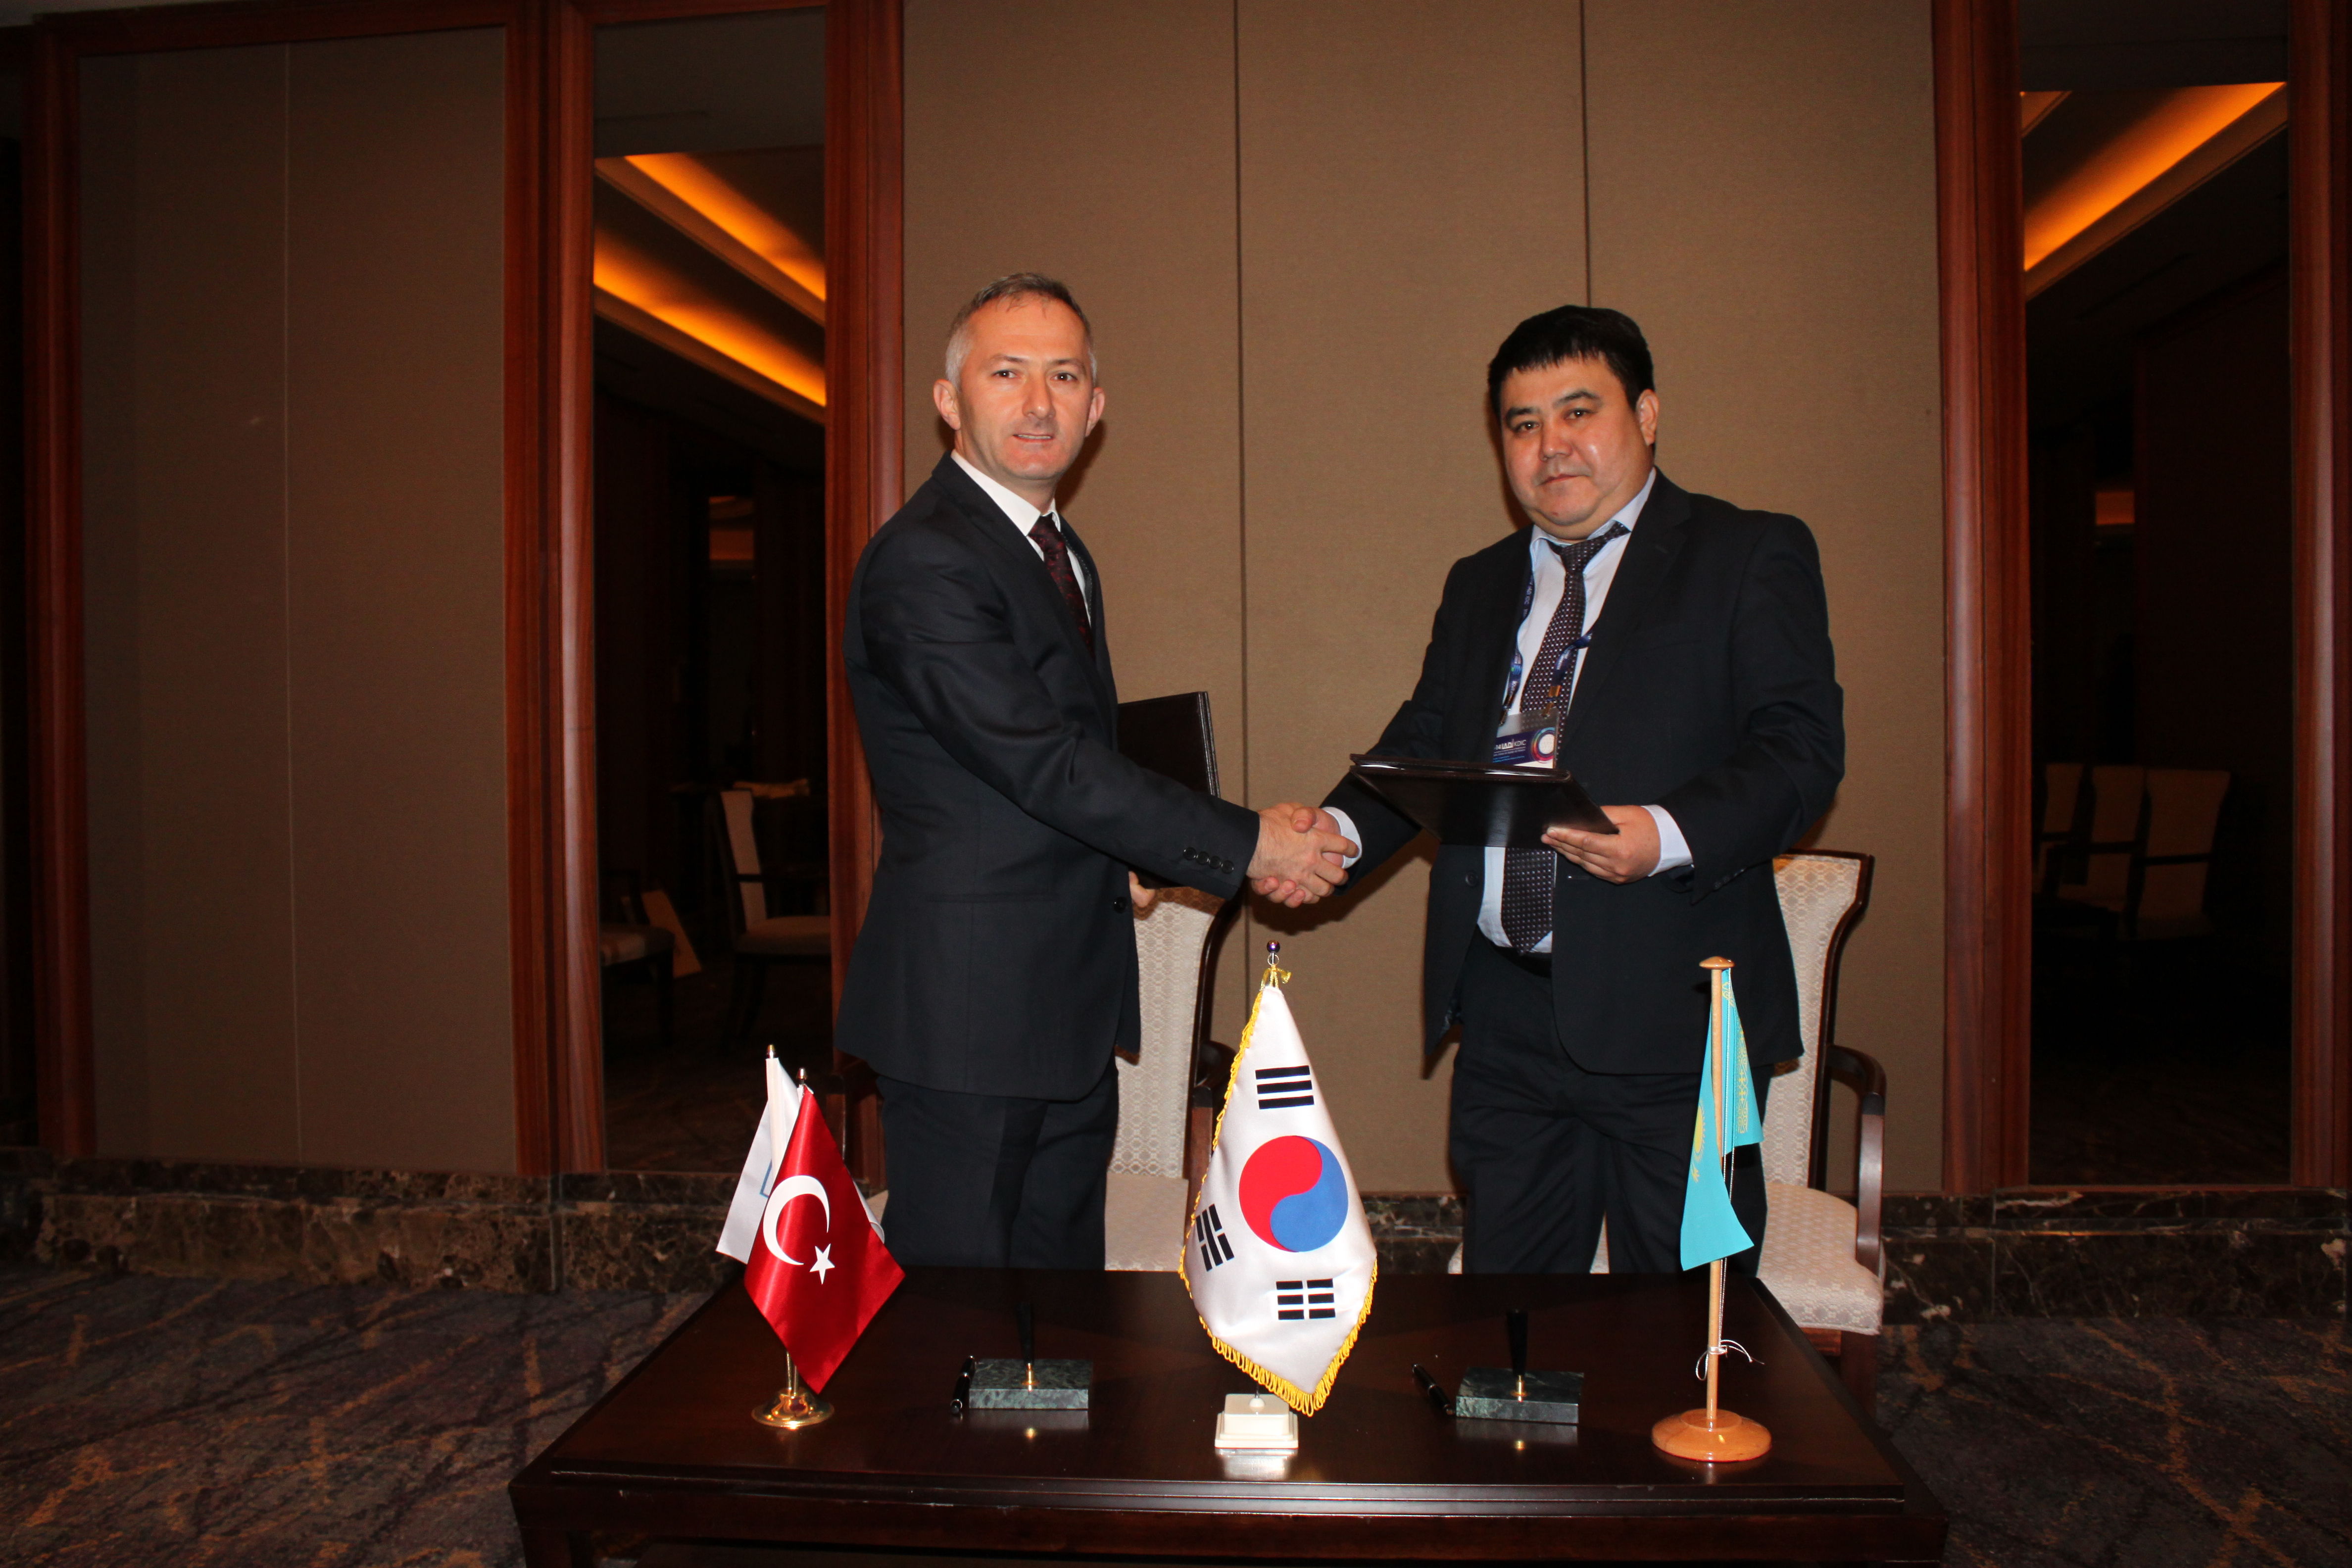 Казахстанский фонд гарантирования депозитов и Фонд гарантирования депозитов Турции подписали меморандум о взаимопонимании и сотрудничестве